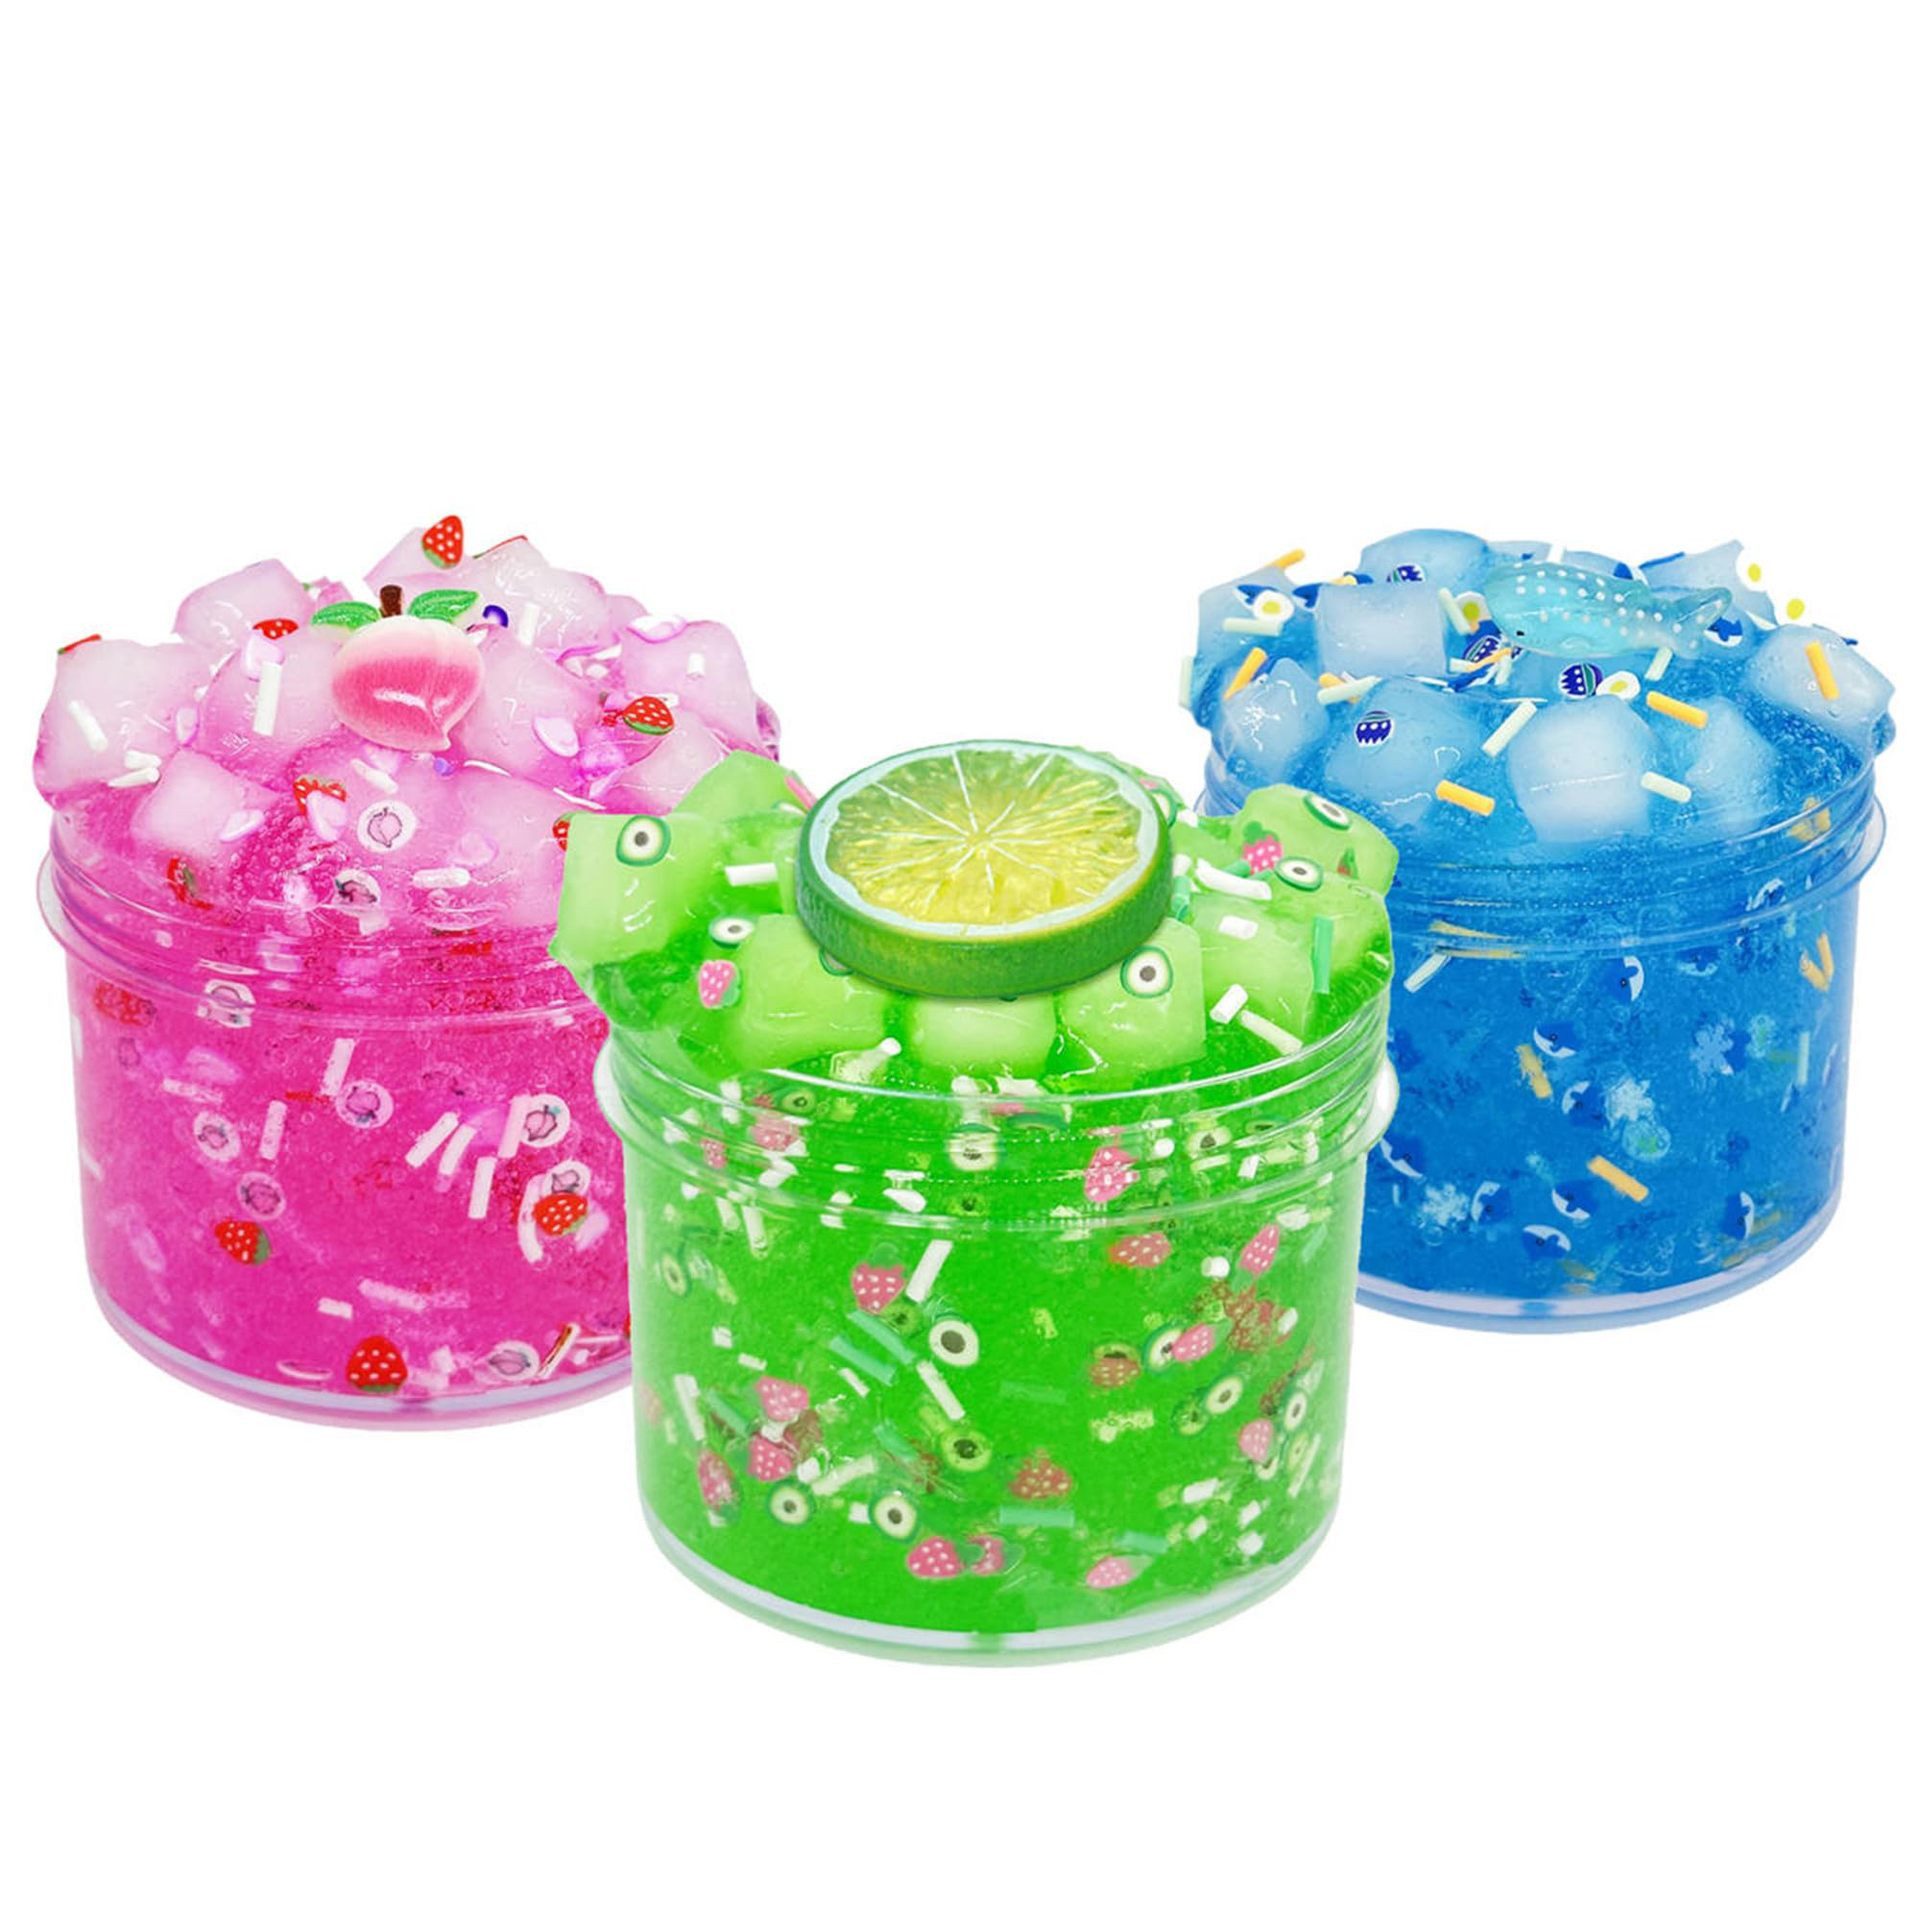 Fivejoy Knete 3 Stück Kit Jelly Cube Crunchy Slime (Rosa Pfirsich Grüne Kiwi und Blaue Meerestiere Super Soft Non-Stick, Geburtstagsgeschenk Slime Party, 3-tlg), Favors für Mädchen und Jungen